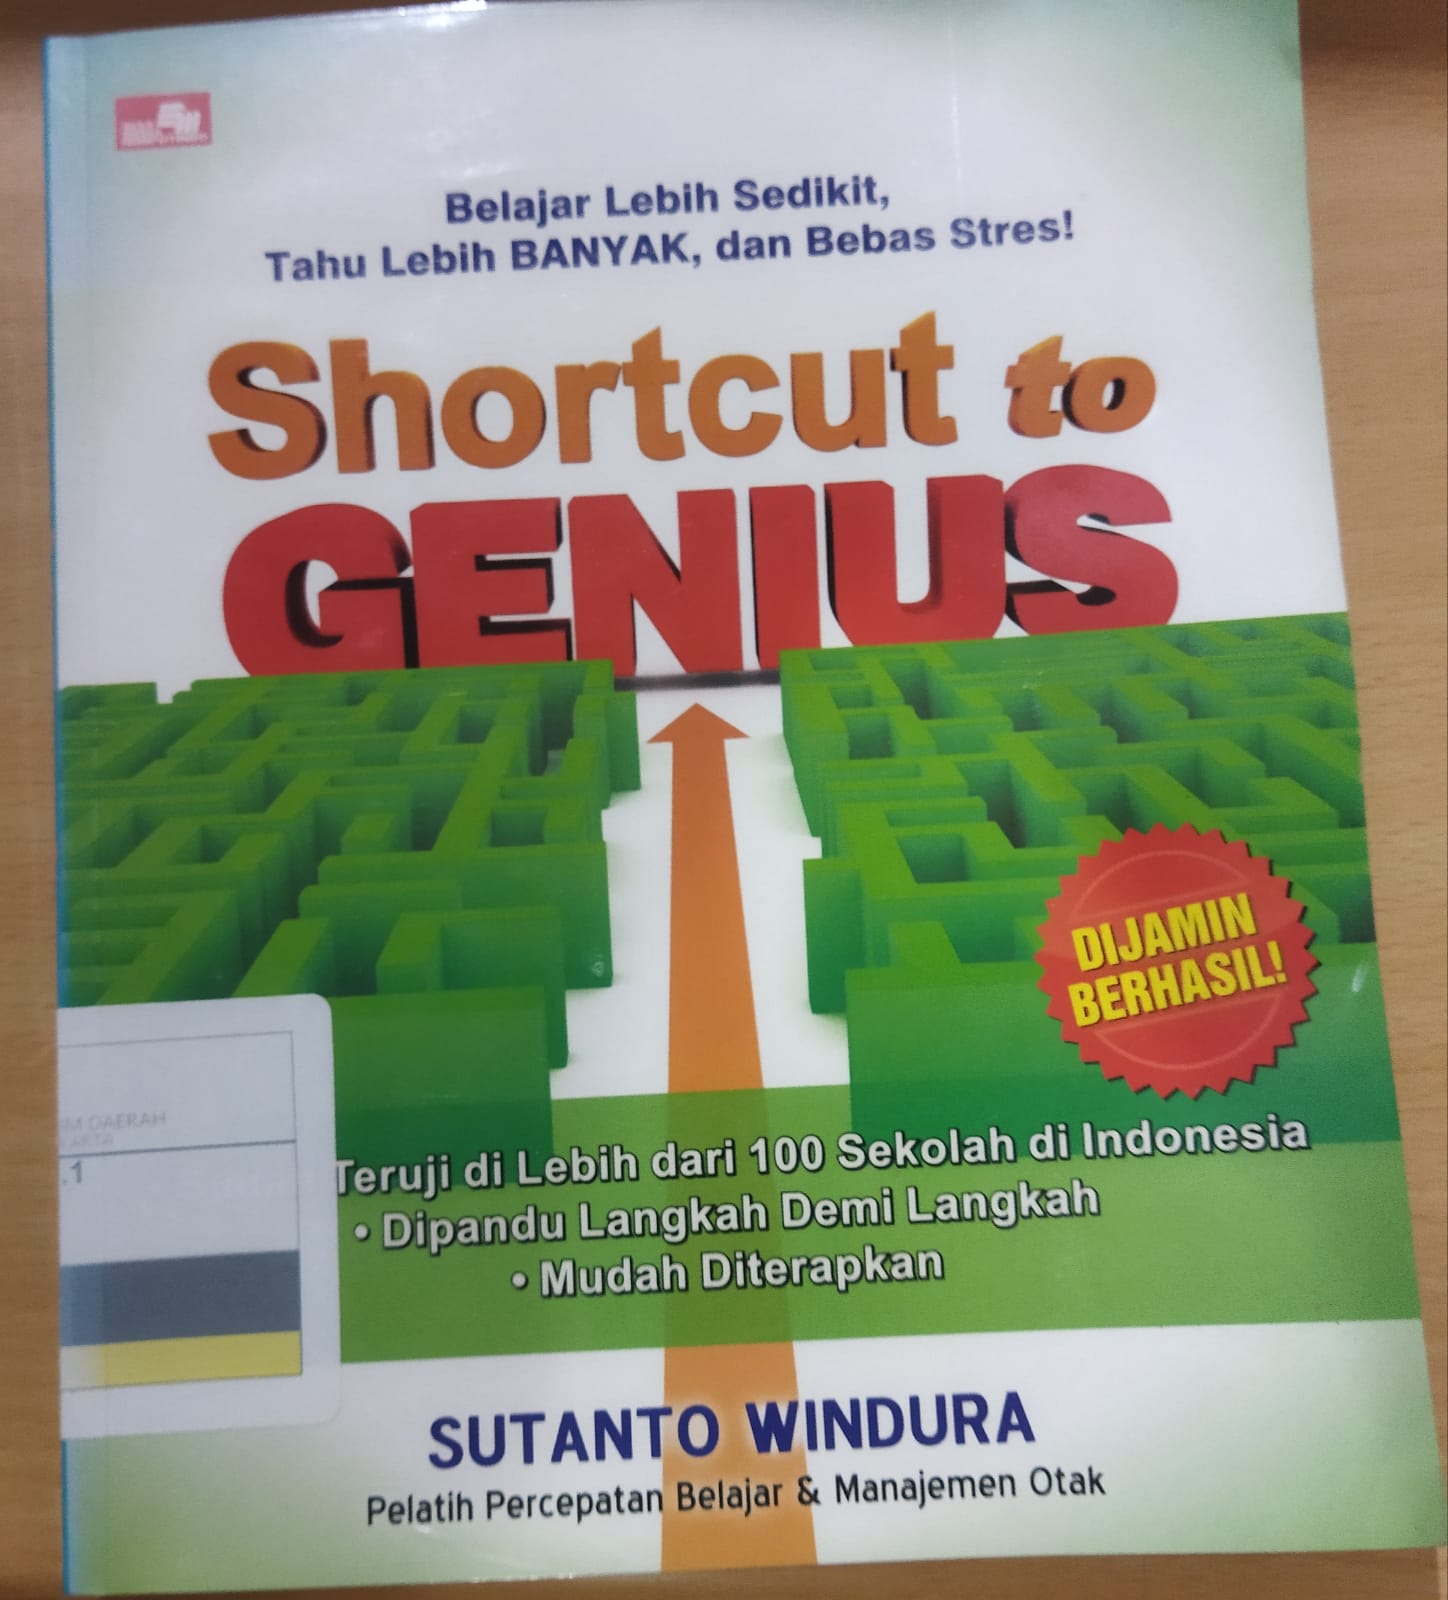 Shortcut to genius : belajar lebih sedikit, tahu lebih banyak dan bebas stres!